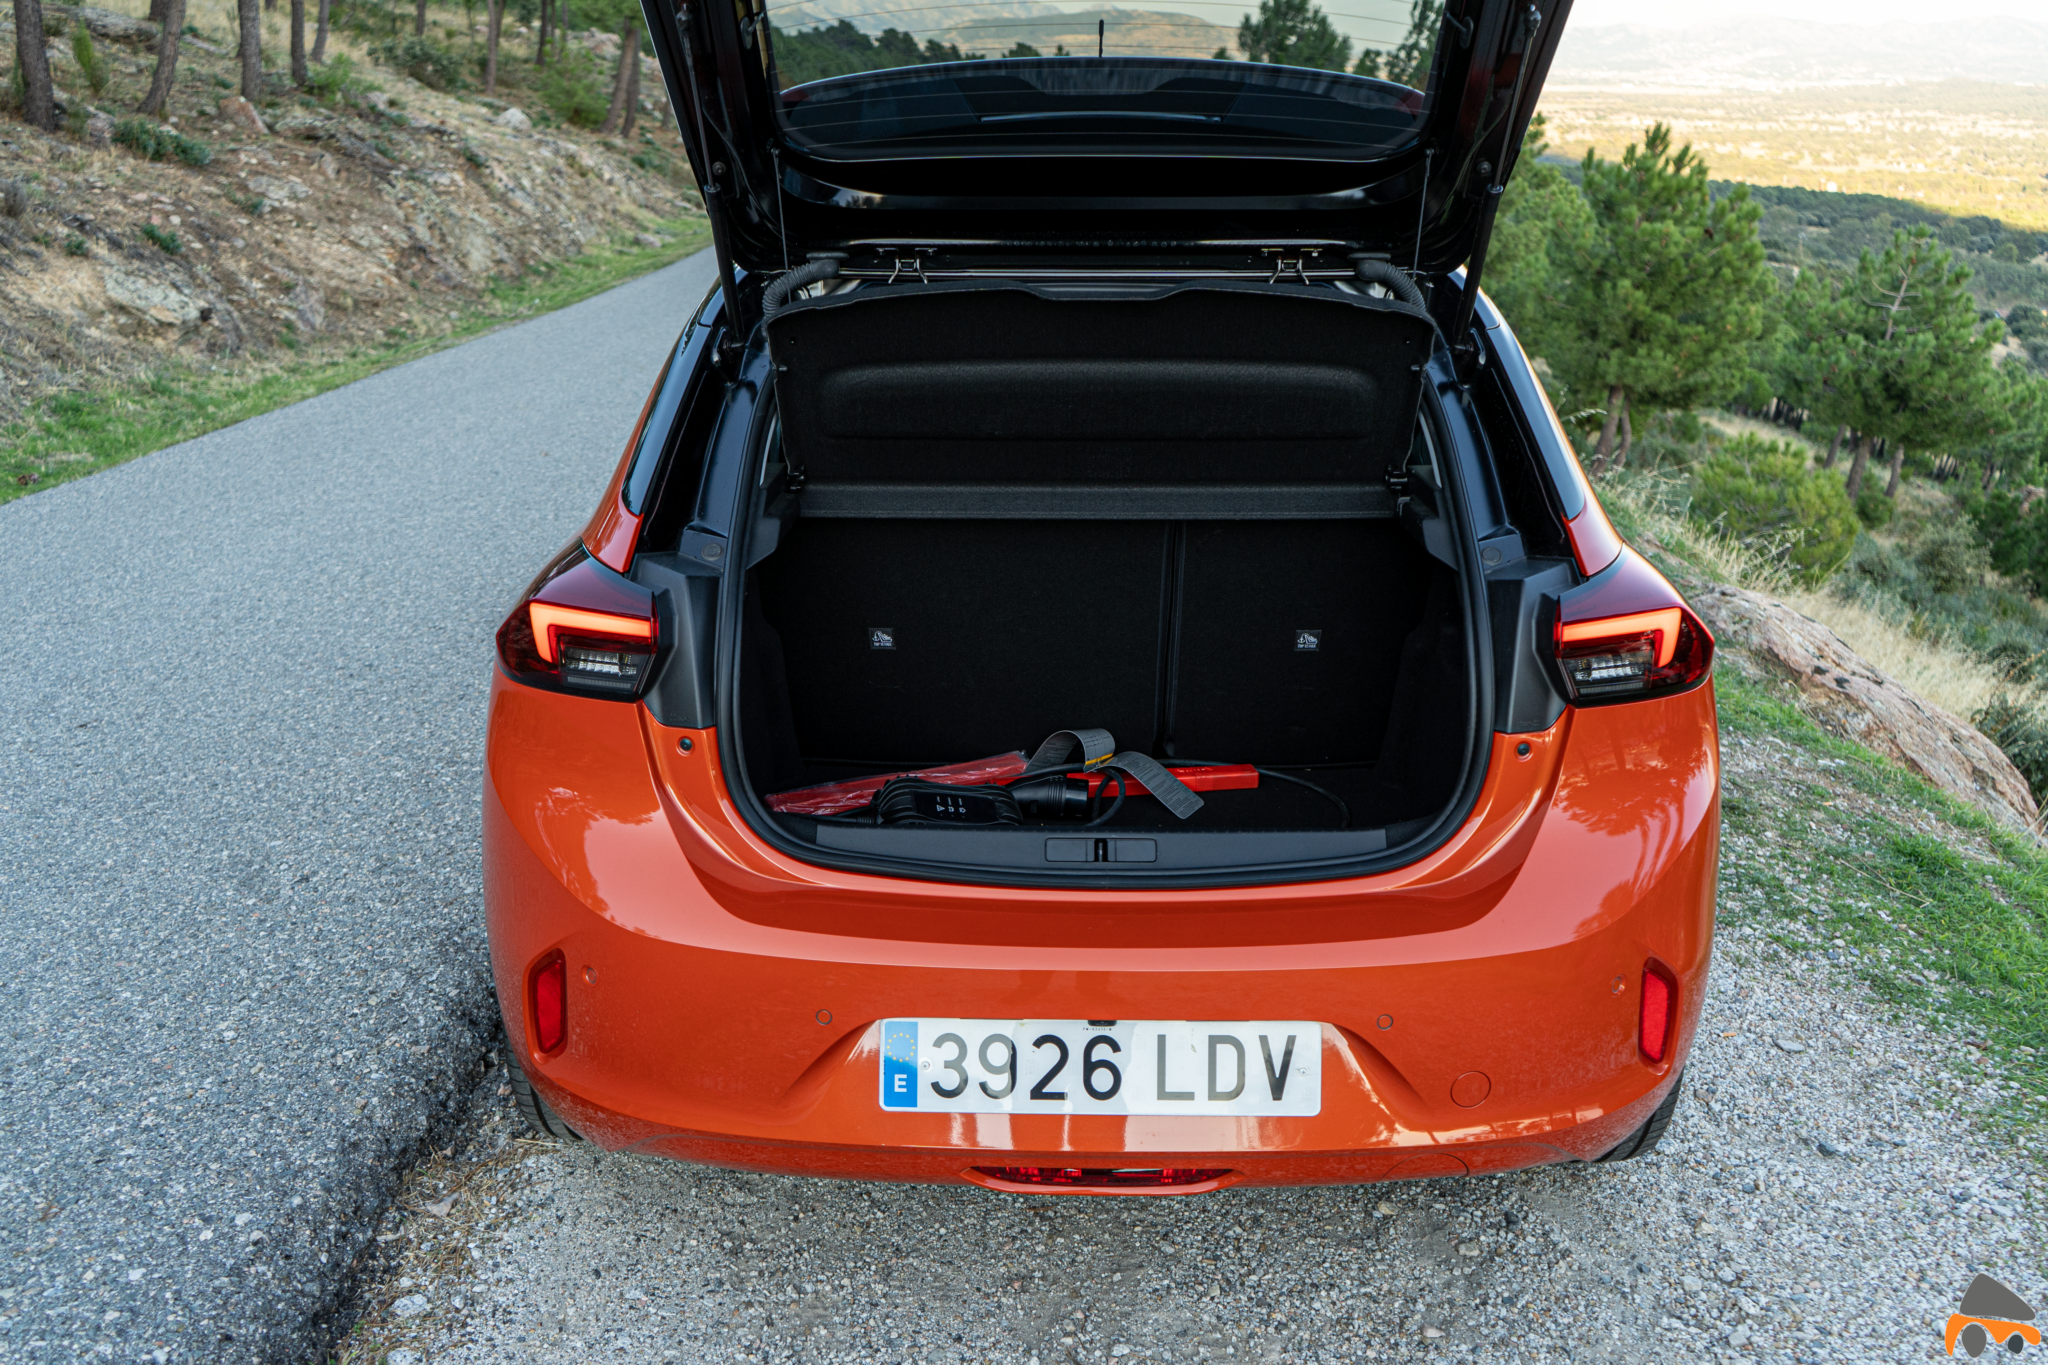 Maletero Opel Corsa e - Prueba Opel Corsa-e 2020: El primer coche eléctrico de Opel tiene 136 CV y 280 km reales de autonomía